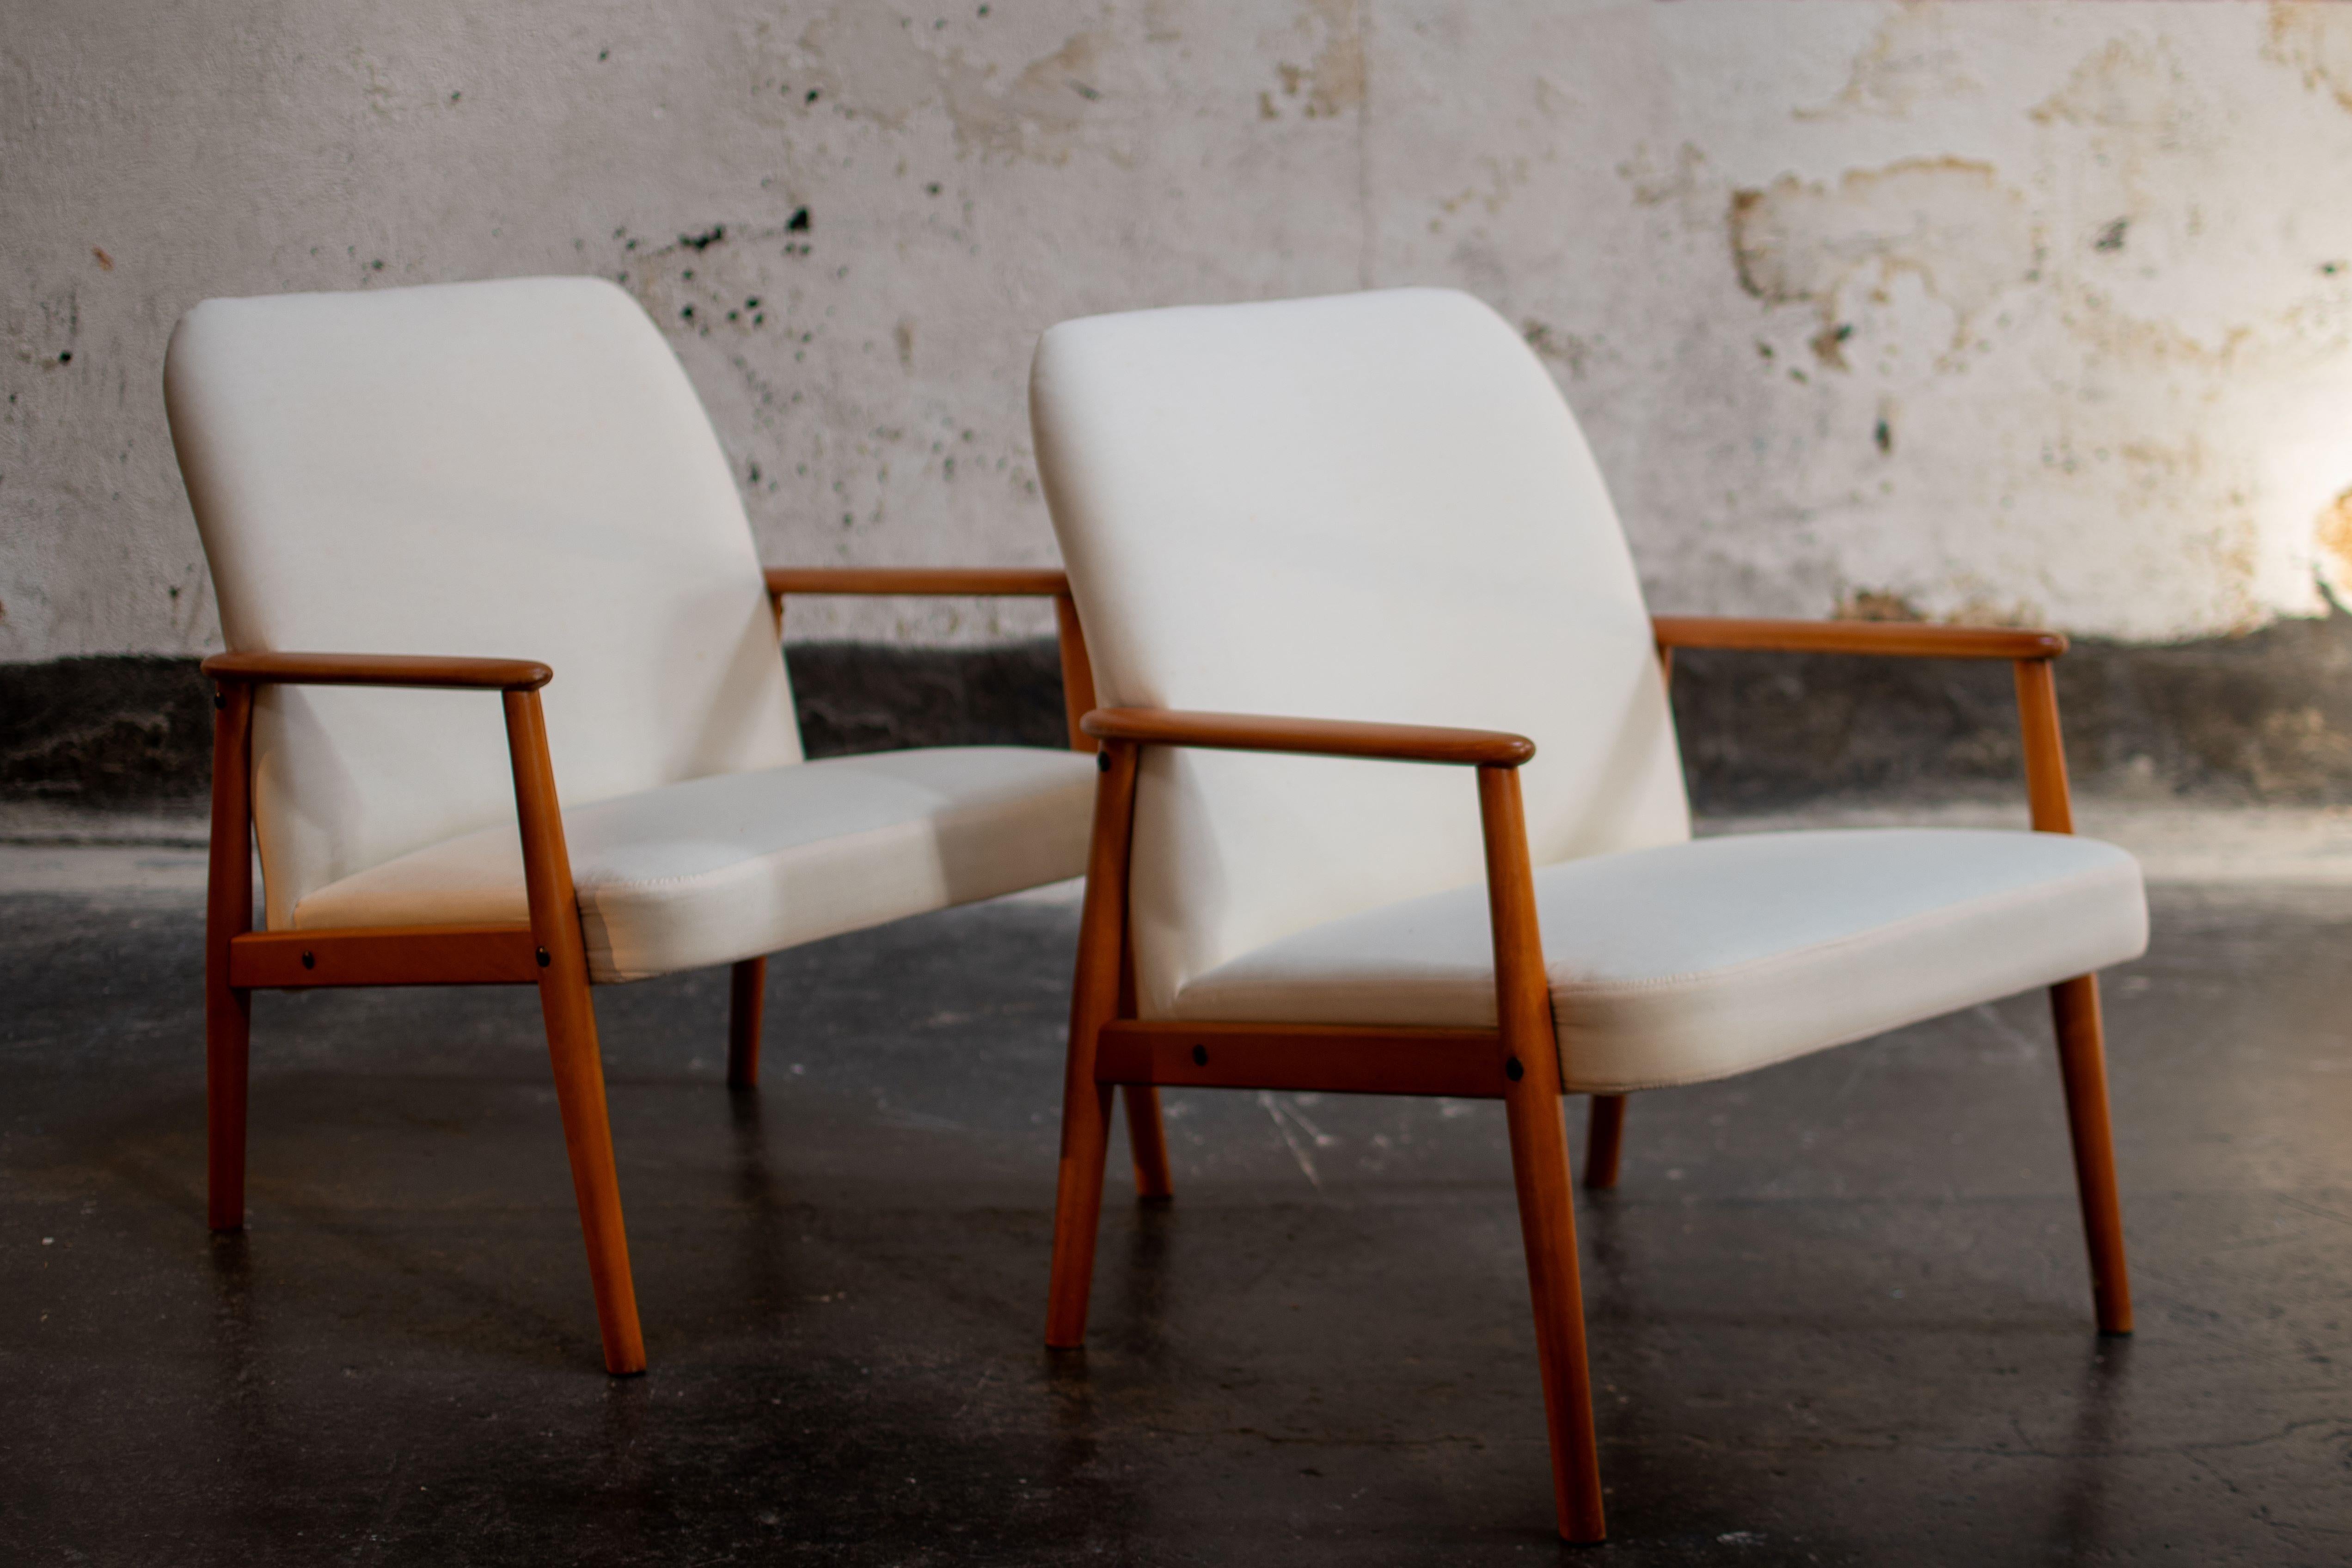 Ein Paar schwedische Modern Scandinavian Lounge Chairs - neu restauriert und neu gepolstert. Klare Linien, warmes Holz,  und die spitz zulaufenden Beine verkörpern das Bild des skandinavischen modernen Stils. Skandinavische Innenräume haben oft sehr